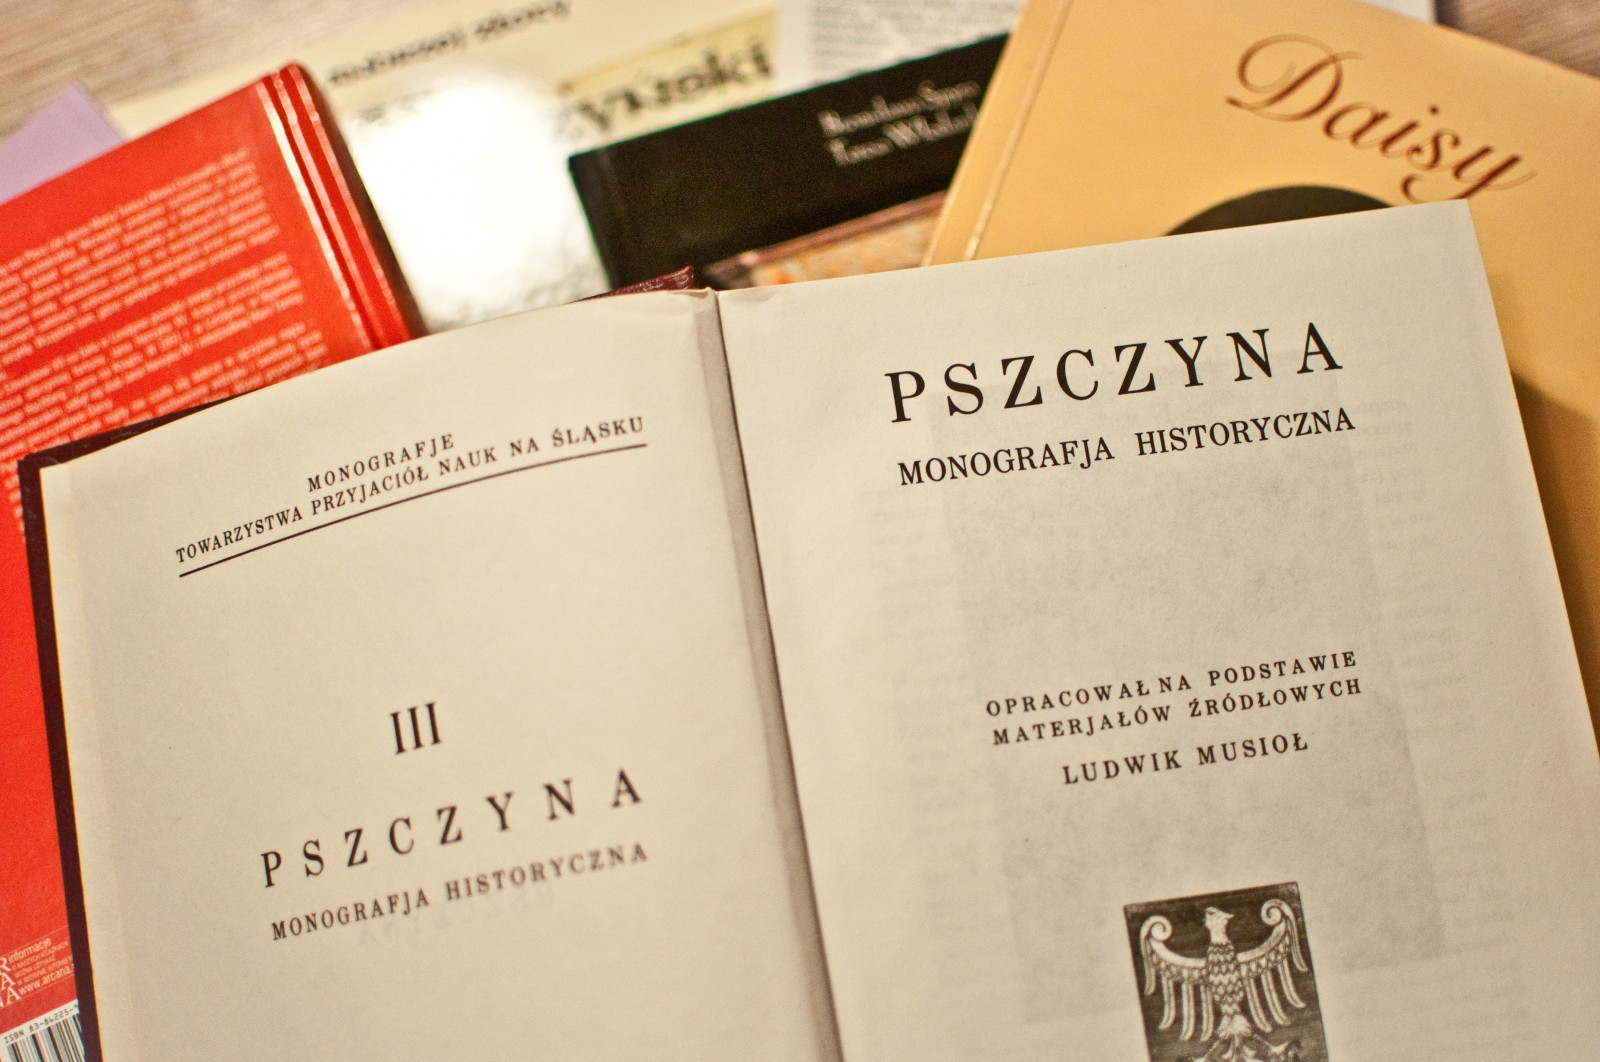 Gmina otrzymała 29 500 złotych na zakup książe